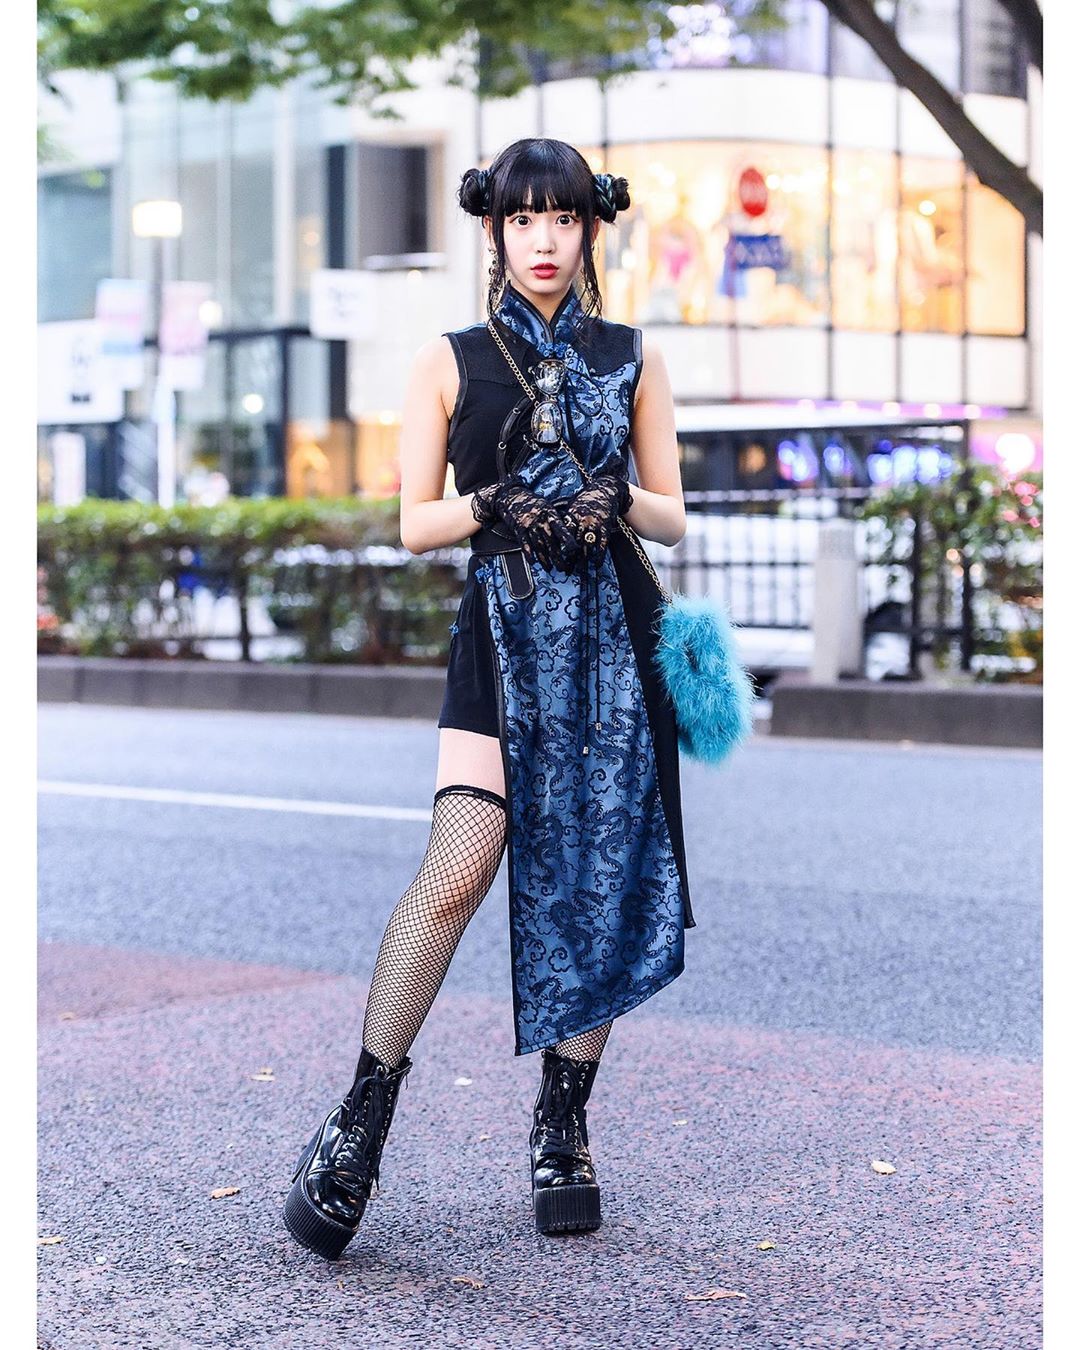 Tokyo Fashion Harajuku shop staffer Misuru (meguharajuku) on the